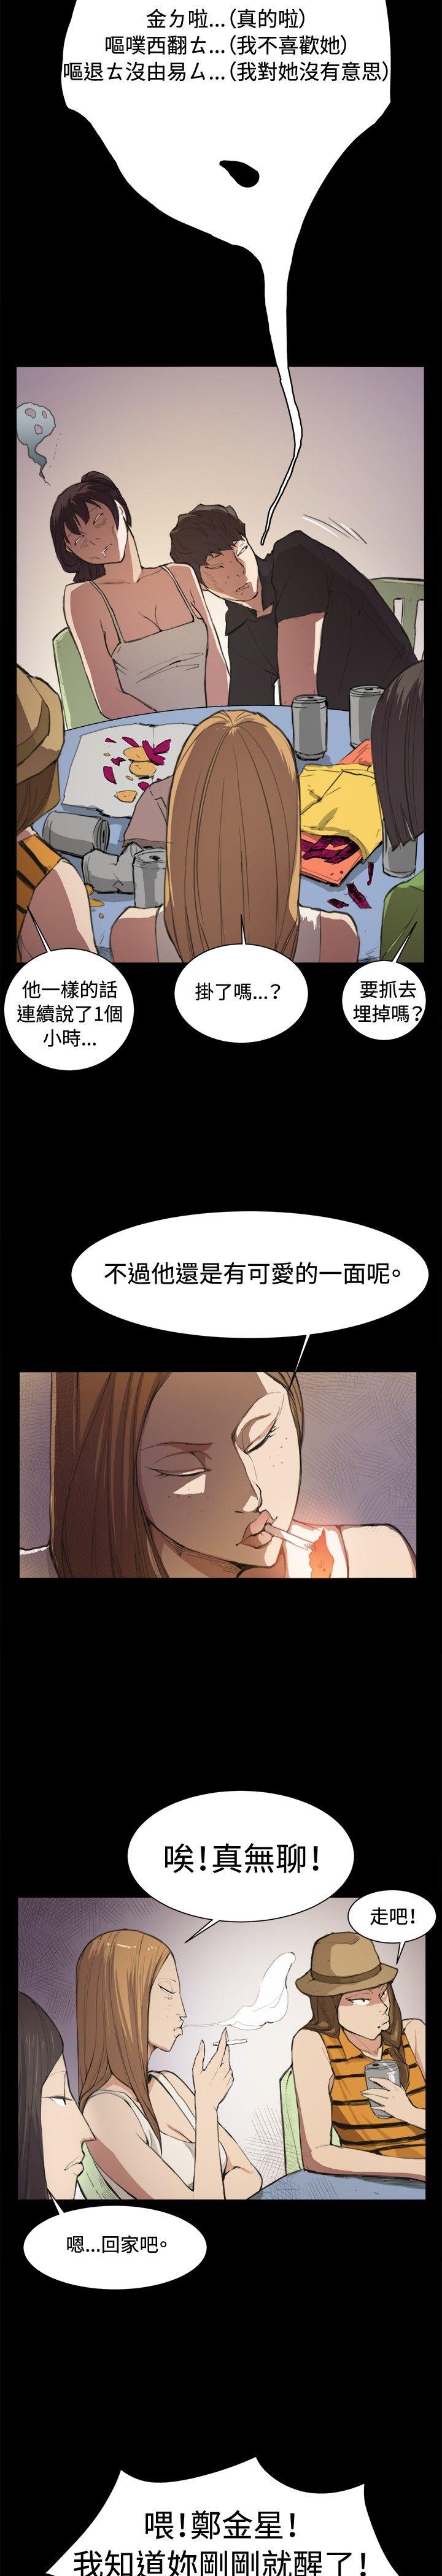 韩国污漫画 深夜便利店 第5话 14